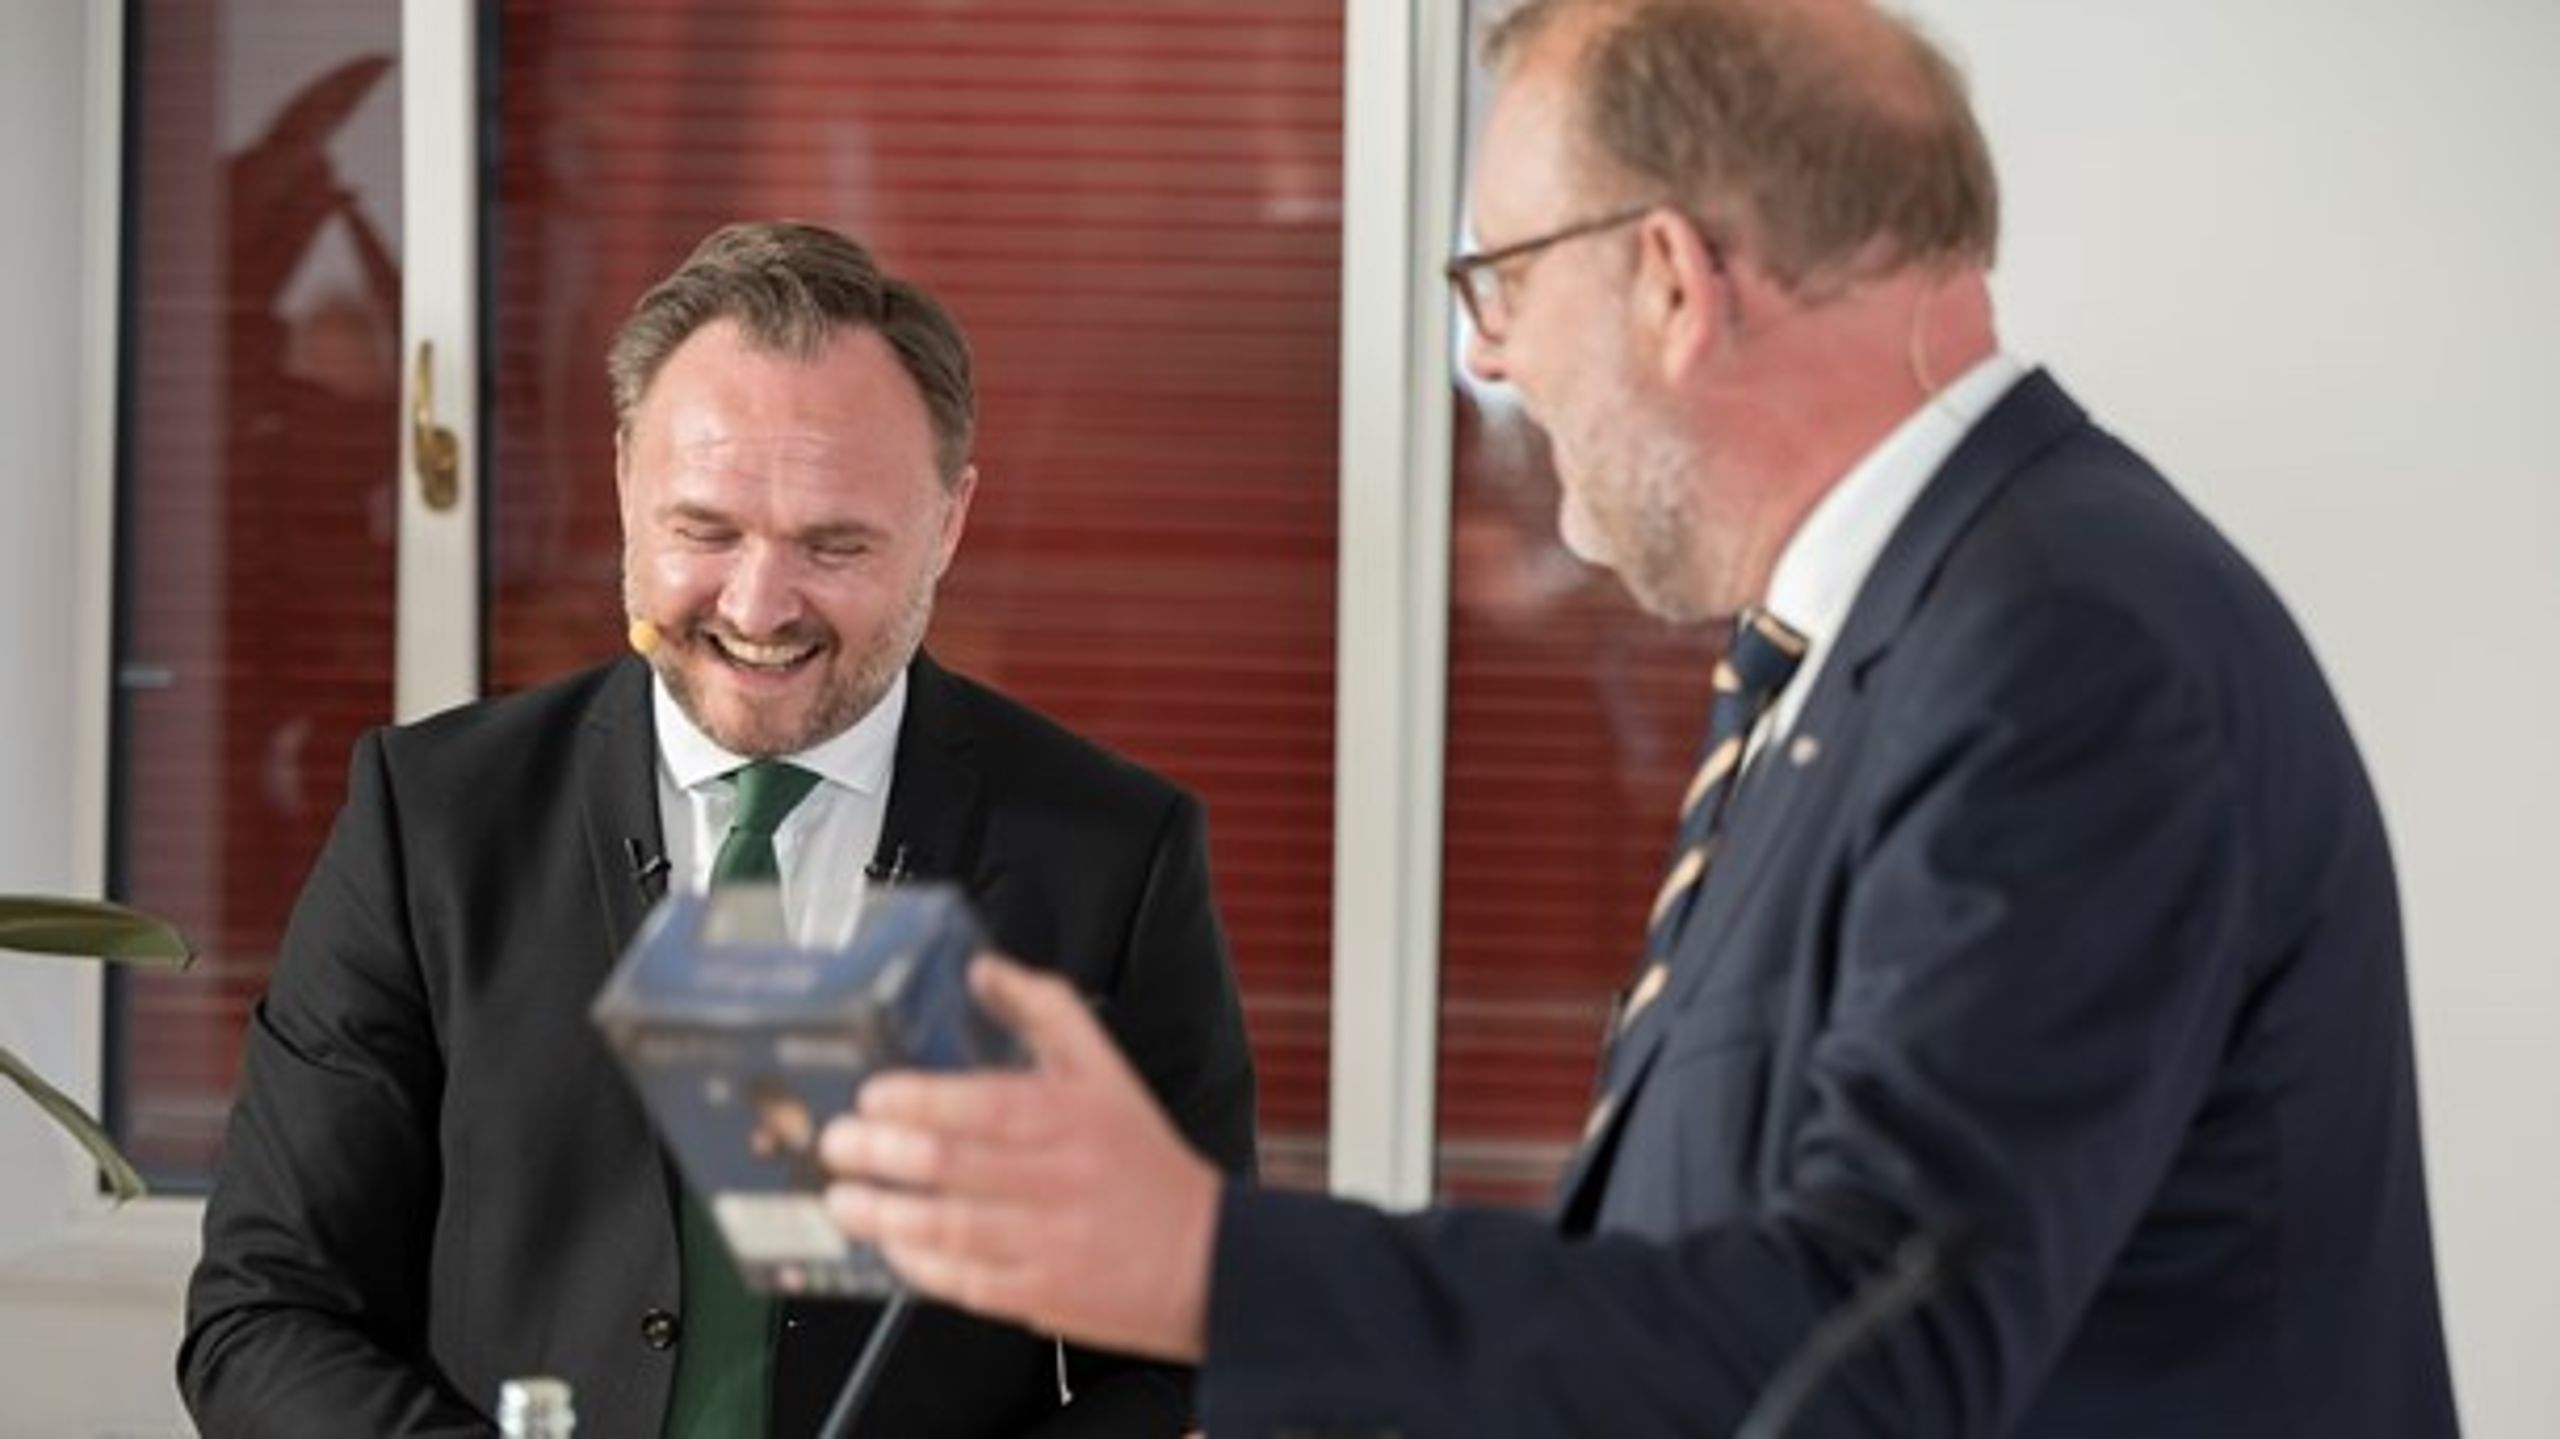 Dan Jørgensen overtager den varme samrådsstol fra Lars Christian Lilleholt, der efter fire år ikke længere er minister.